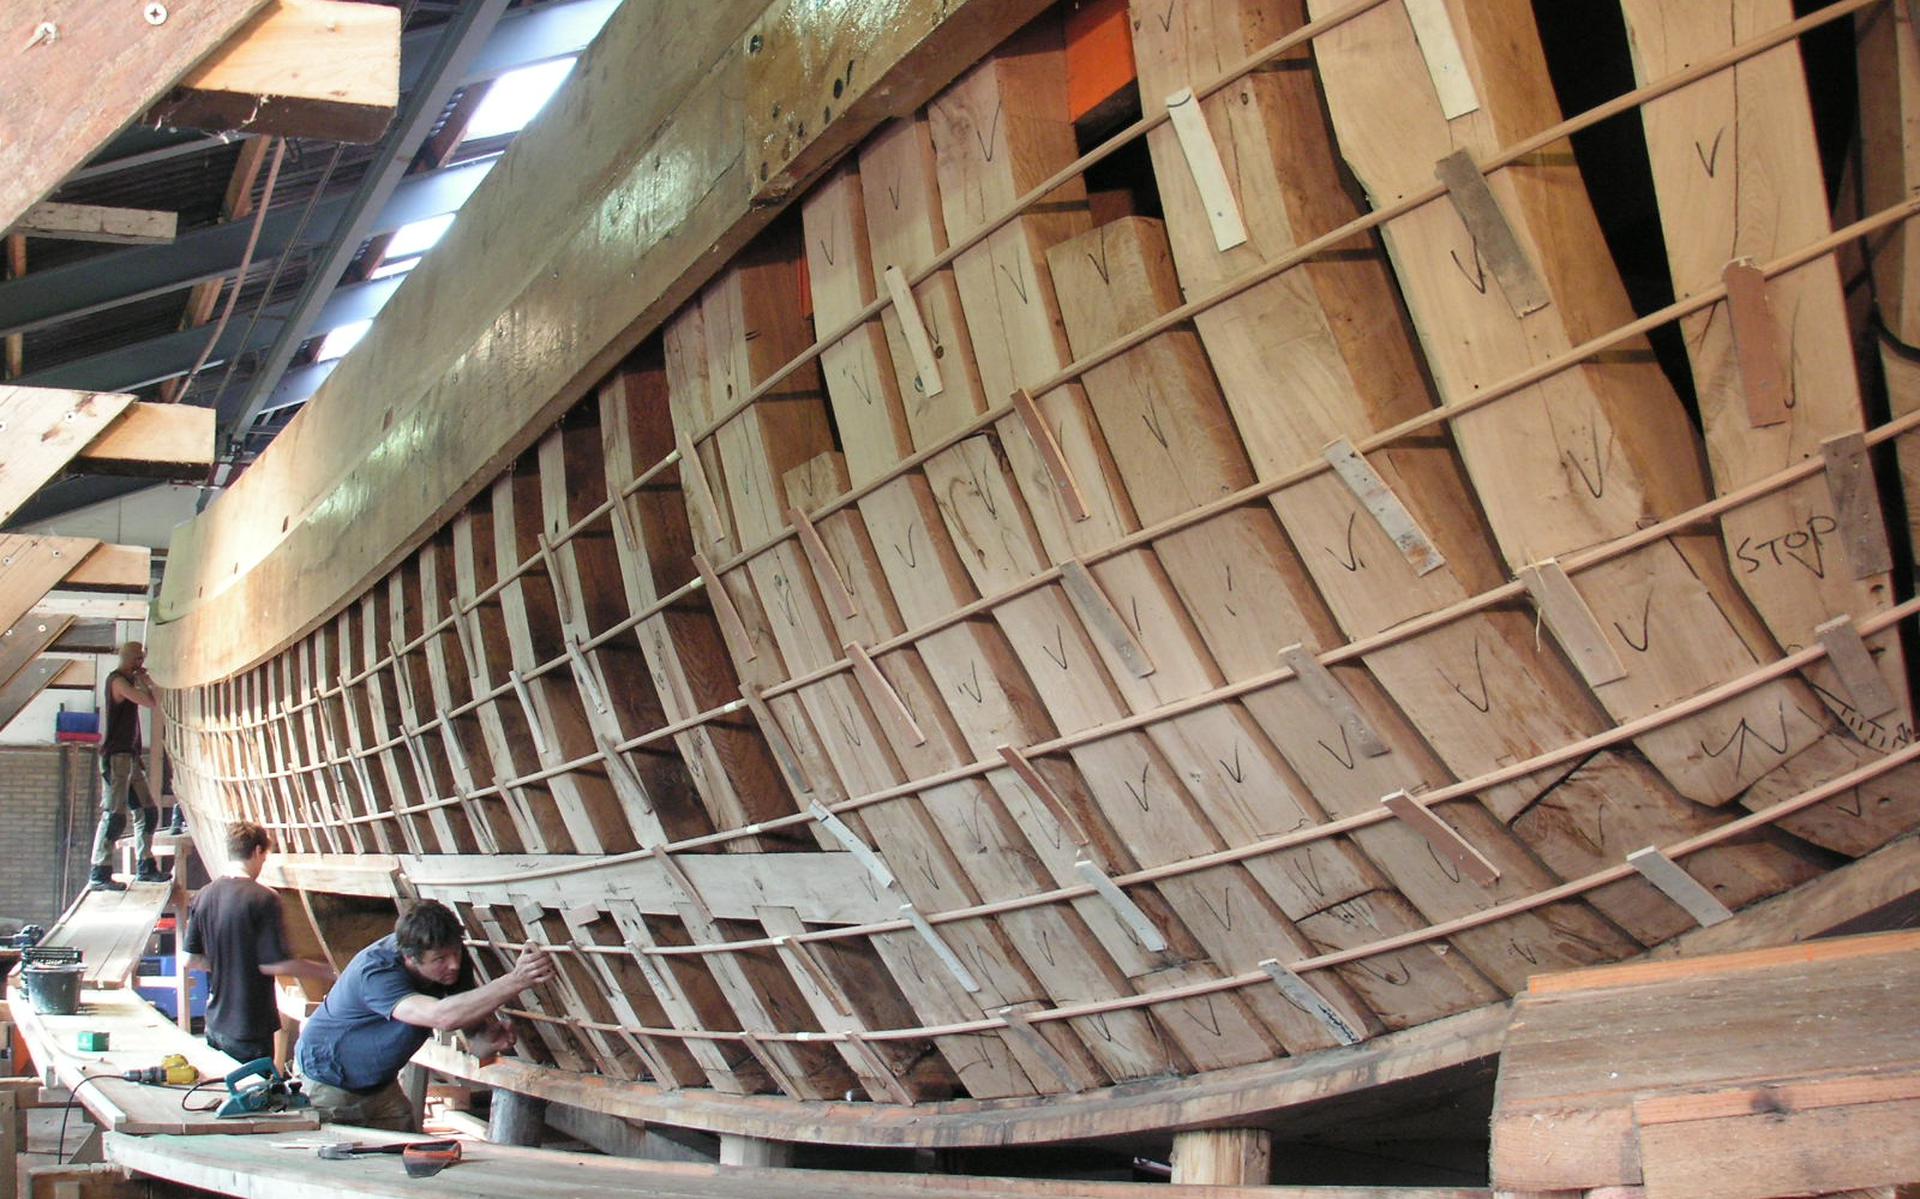 nut van eeuwenoude houten schepen? 'Oplossingen voor problemen in de toekomst, kun je vinden in het verleden', zegt Klaas - Leeuwarder Courant